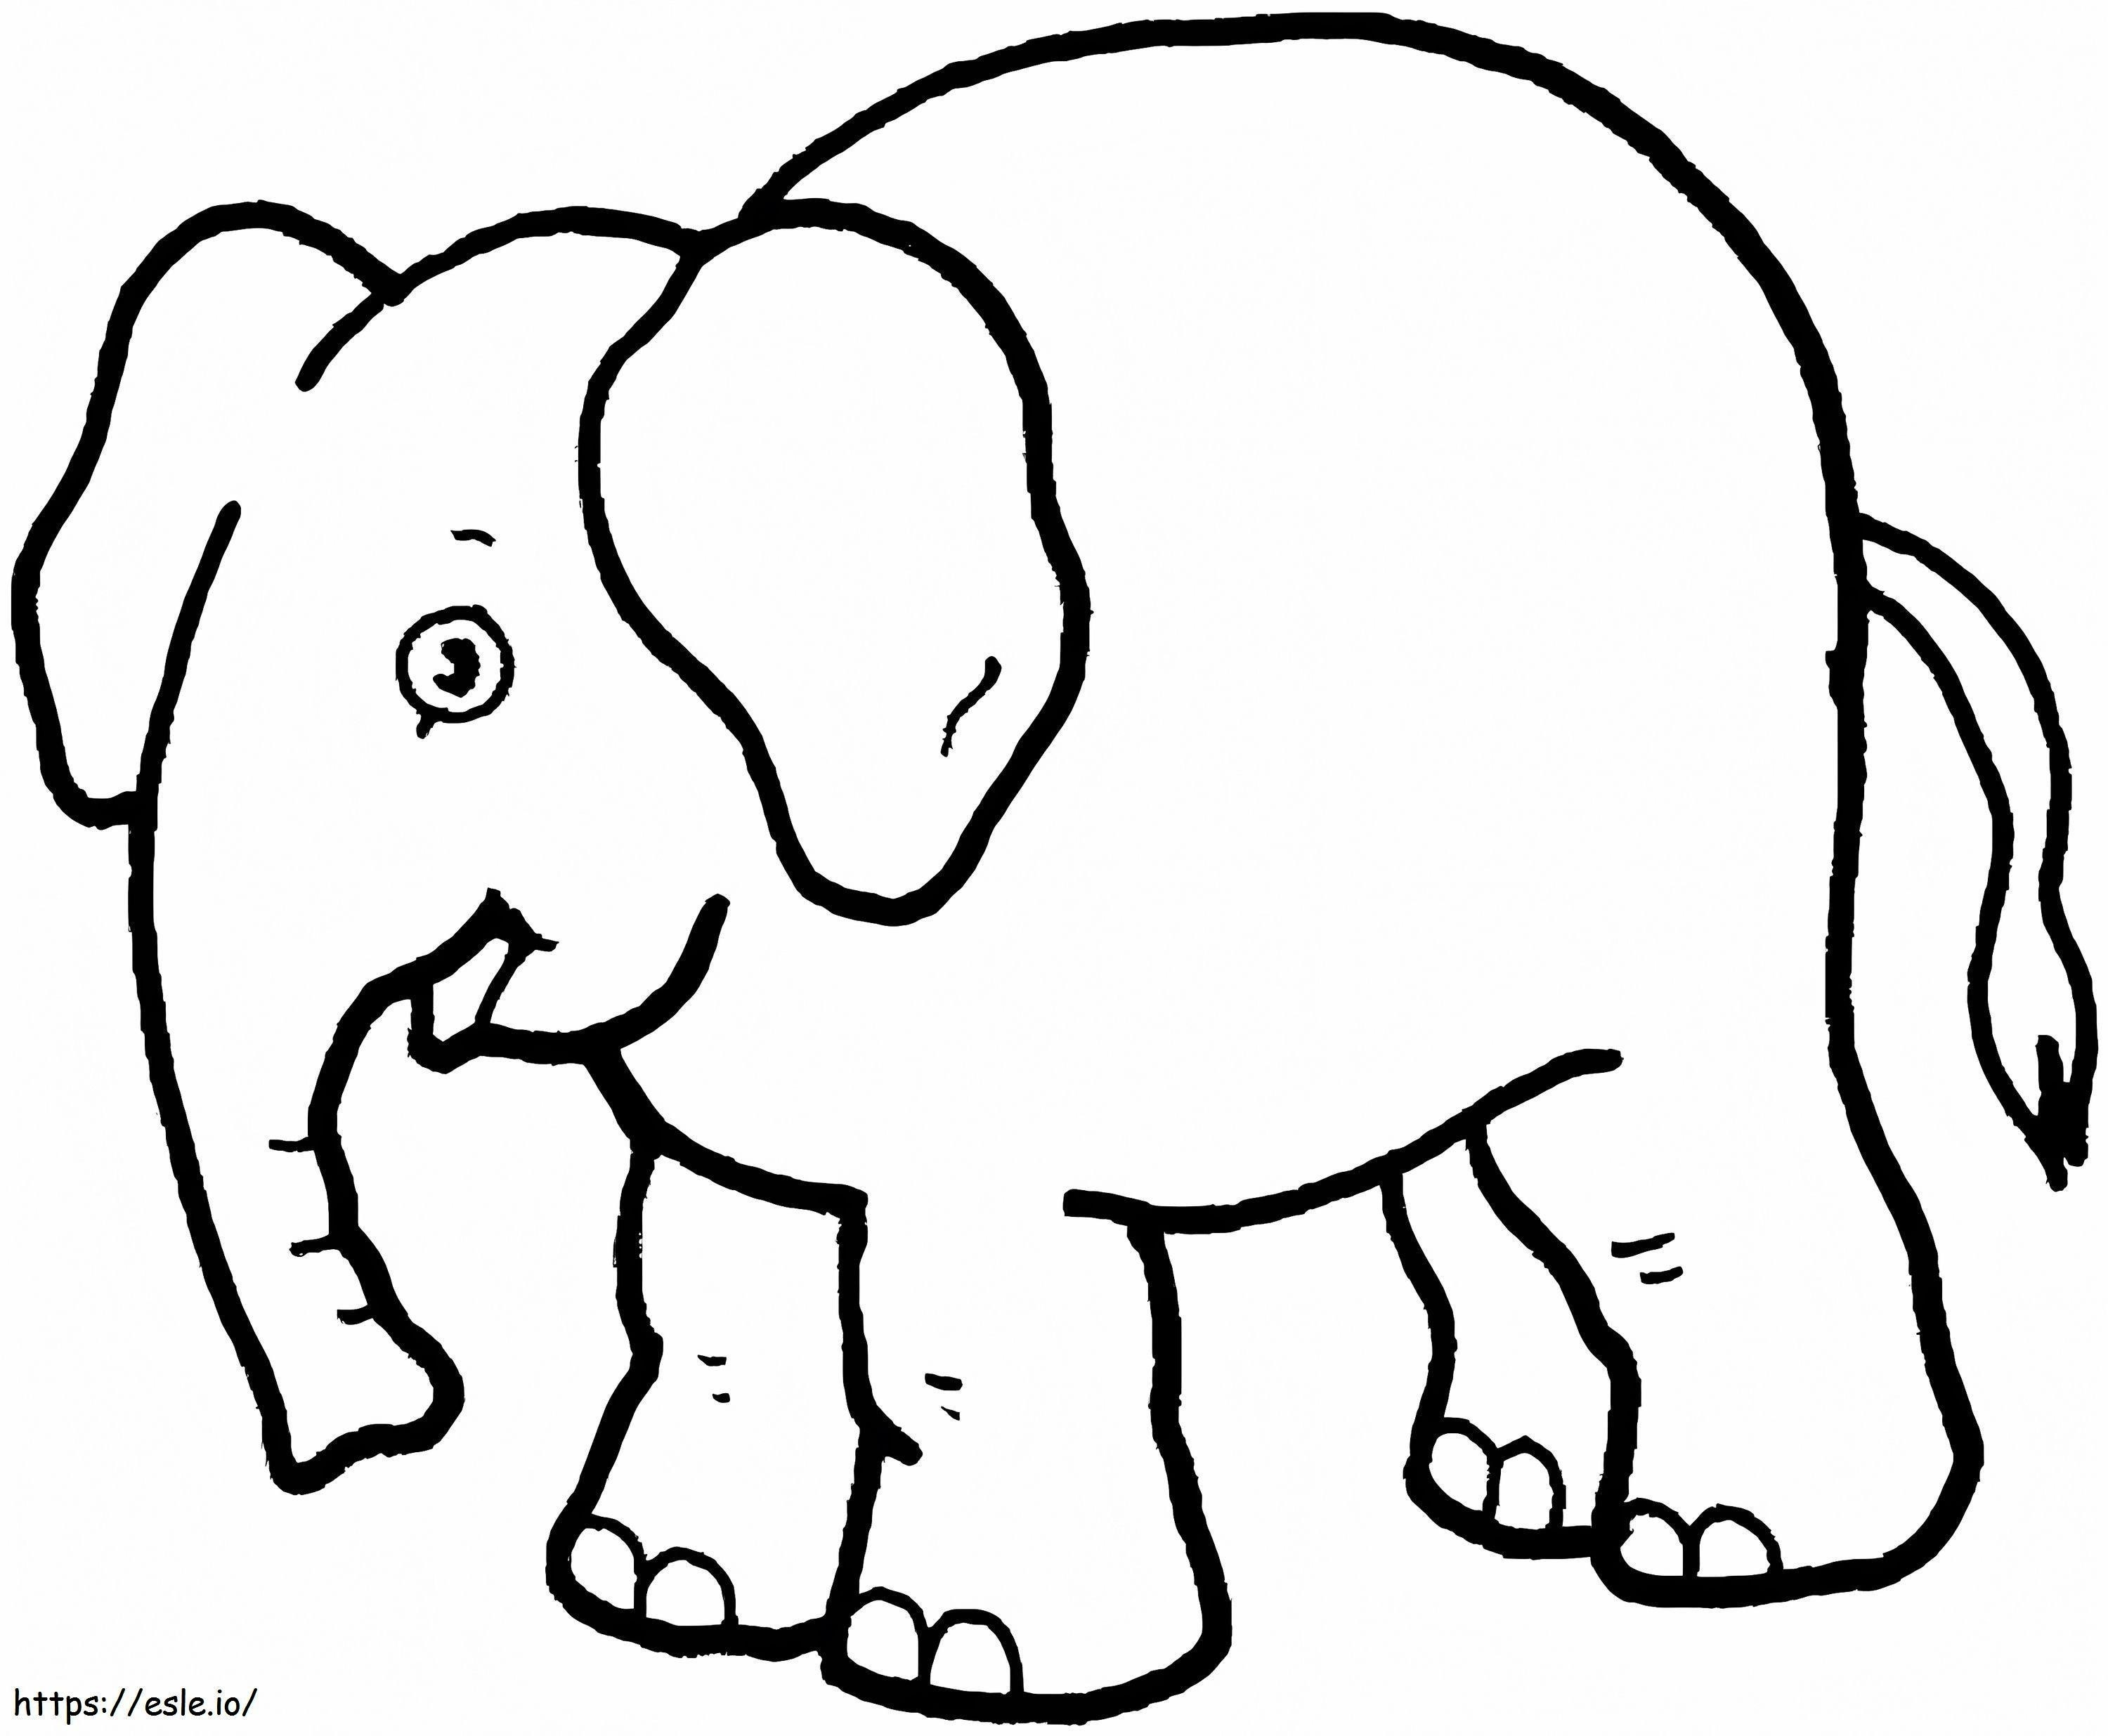 Un elefant amuzant de colorat